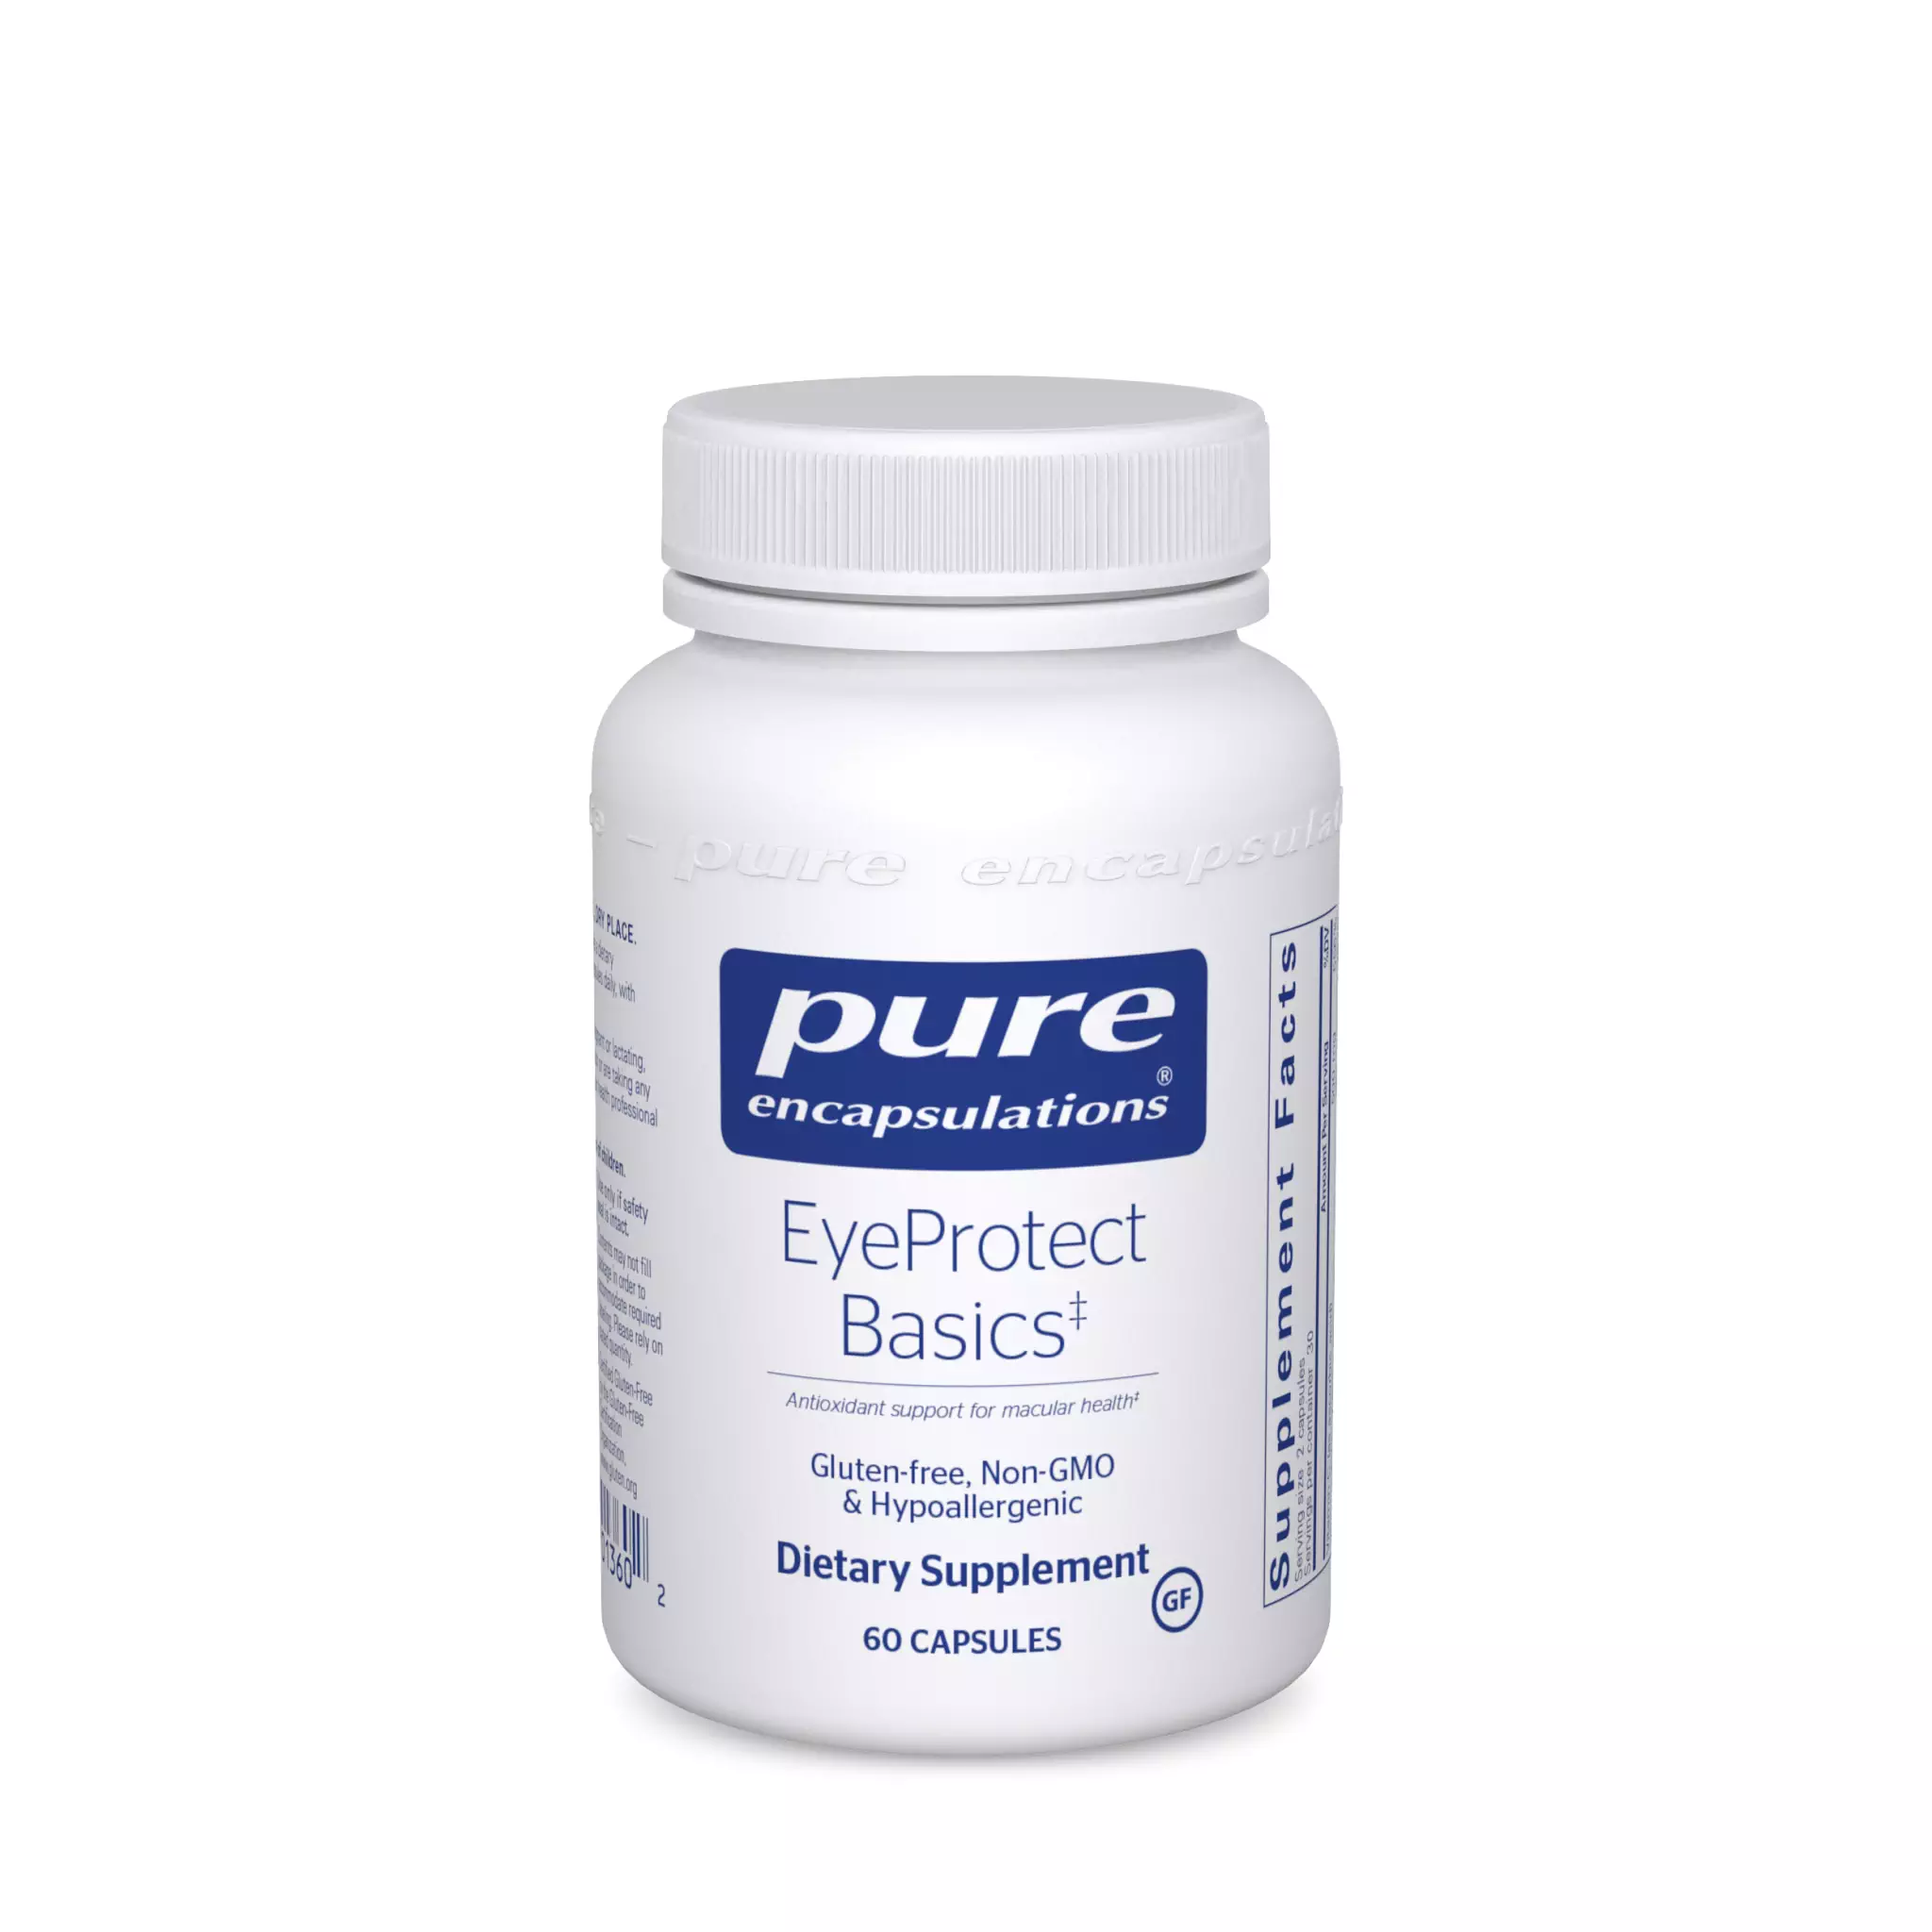 Pure Encapsulations - Eyeprotect Basics